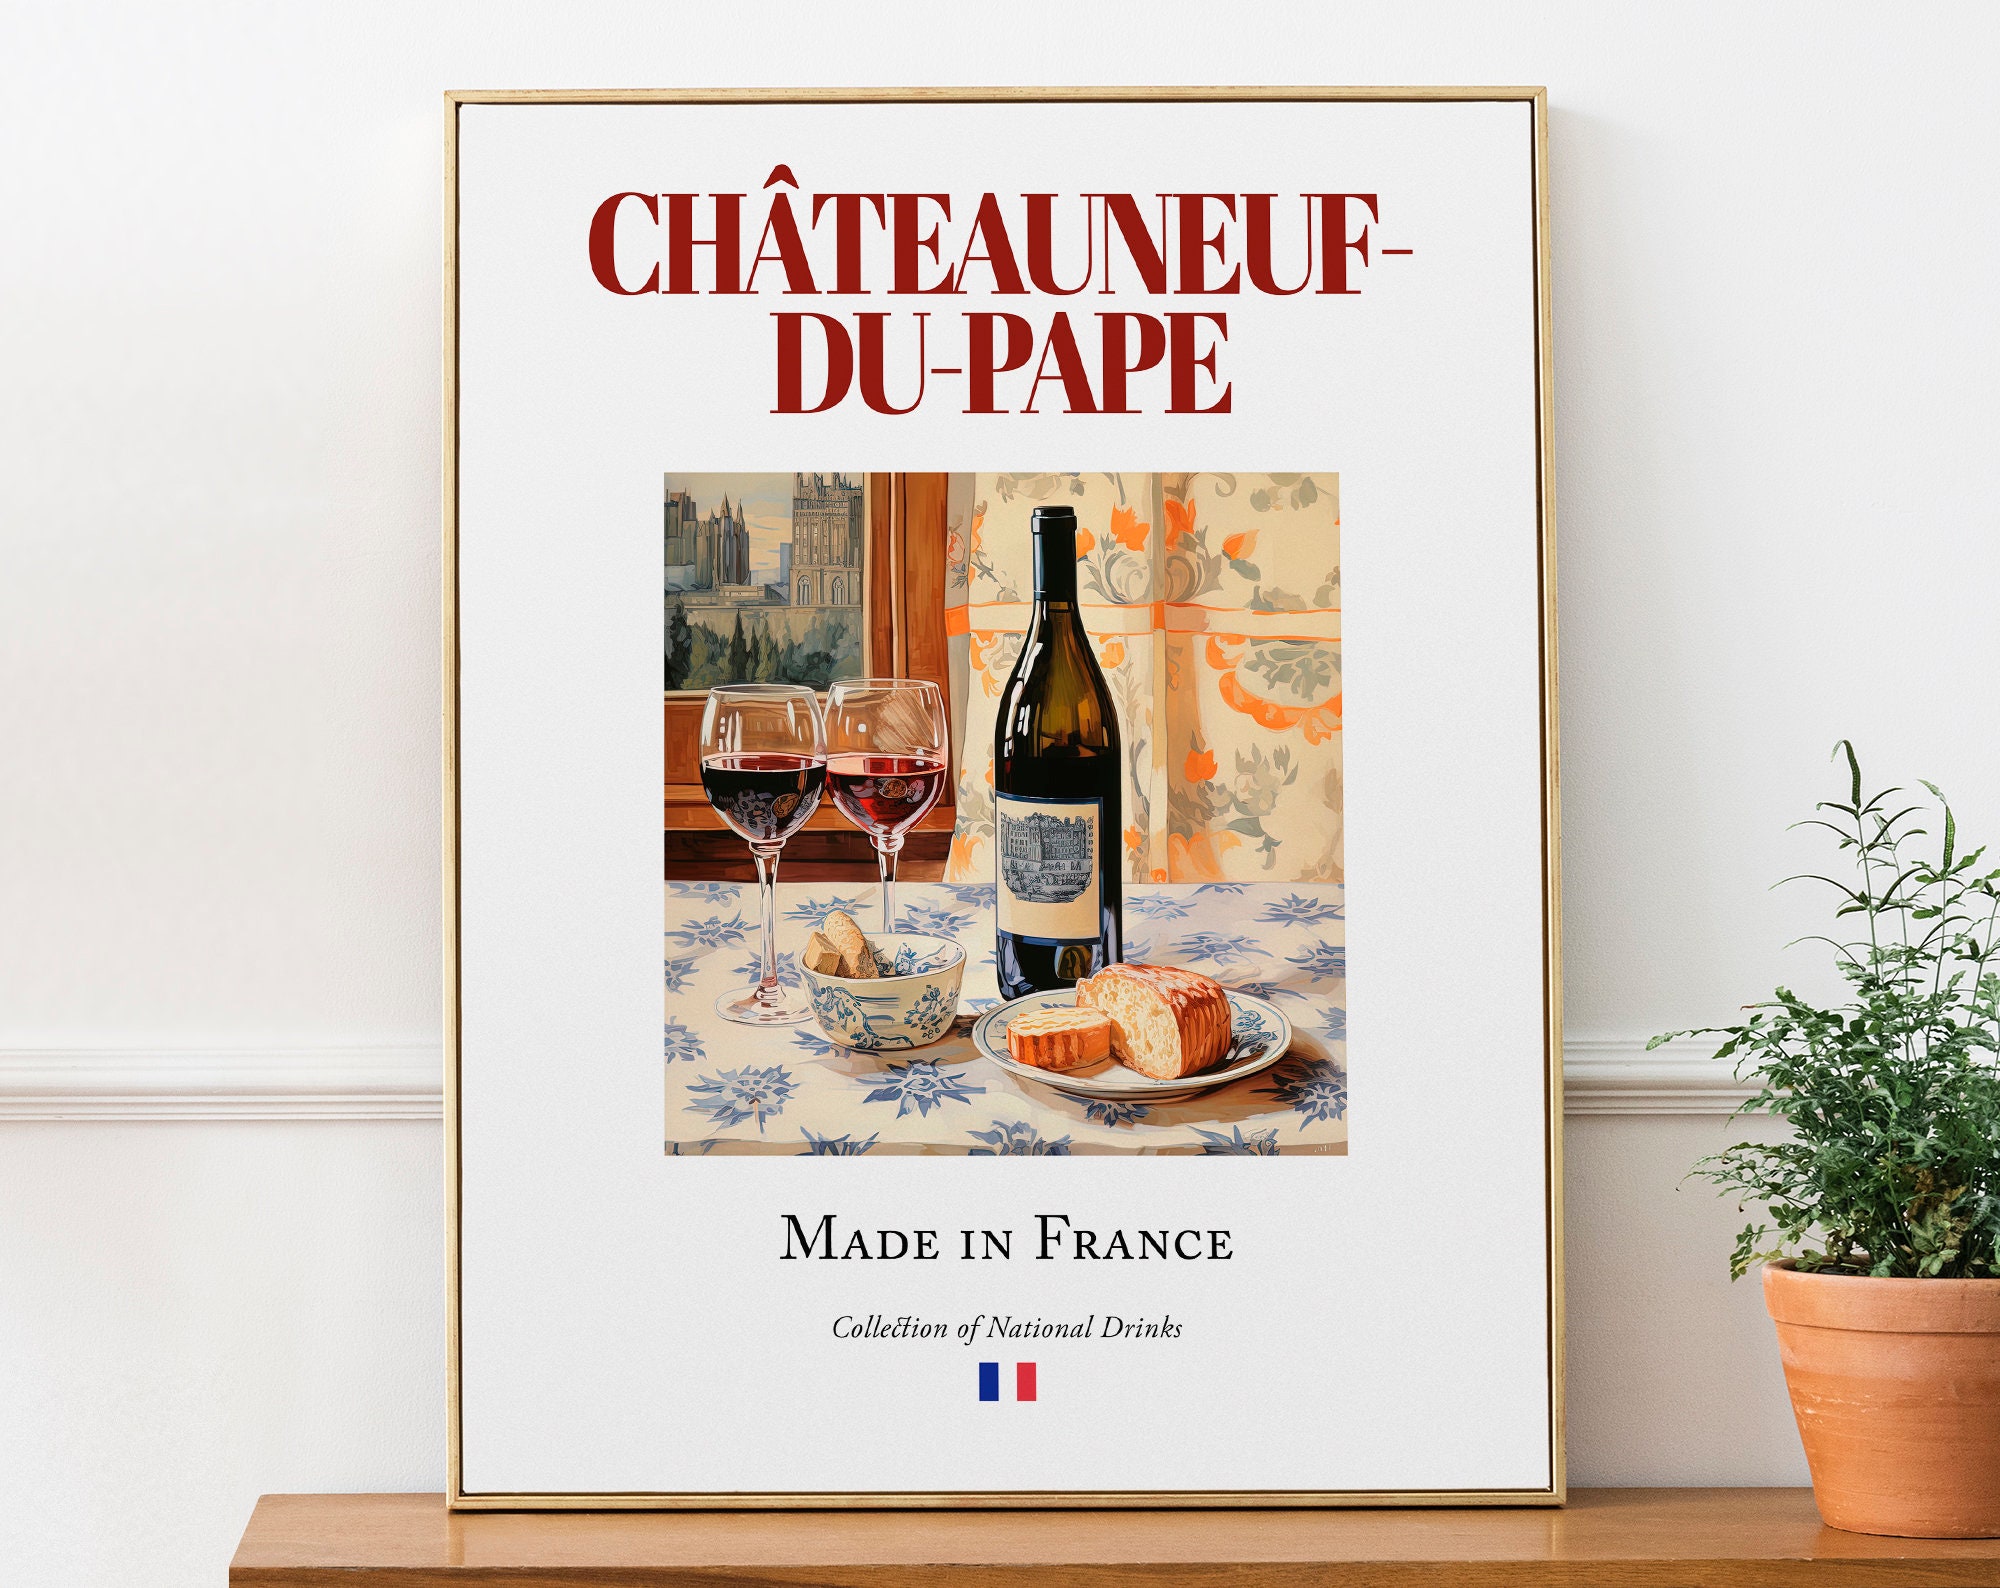 Tablier personnalisé Chateauneuf du Pape by Pimponette : produits